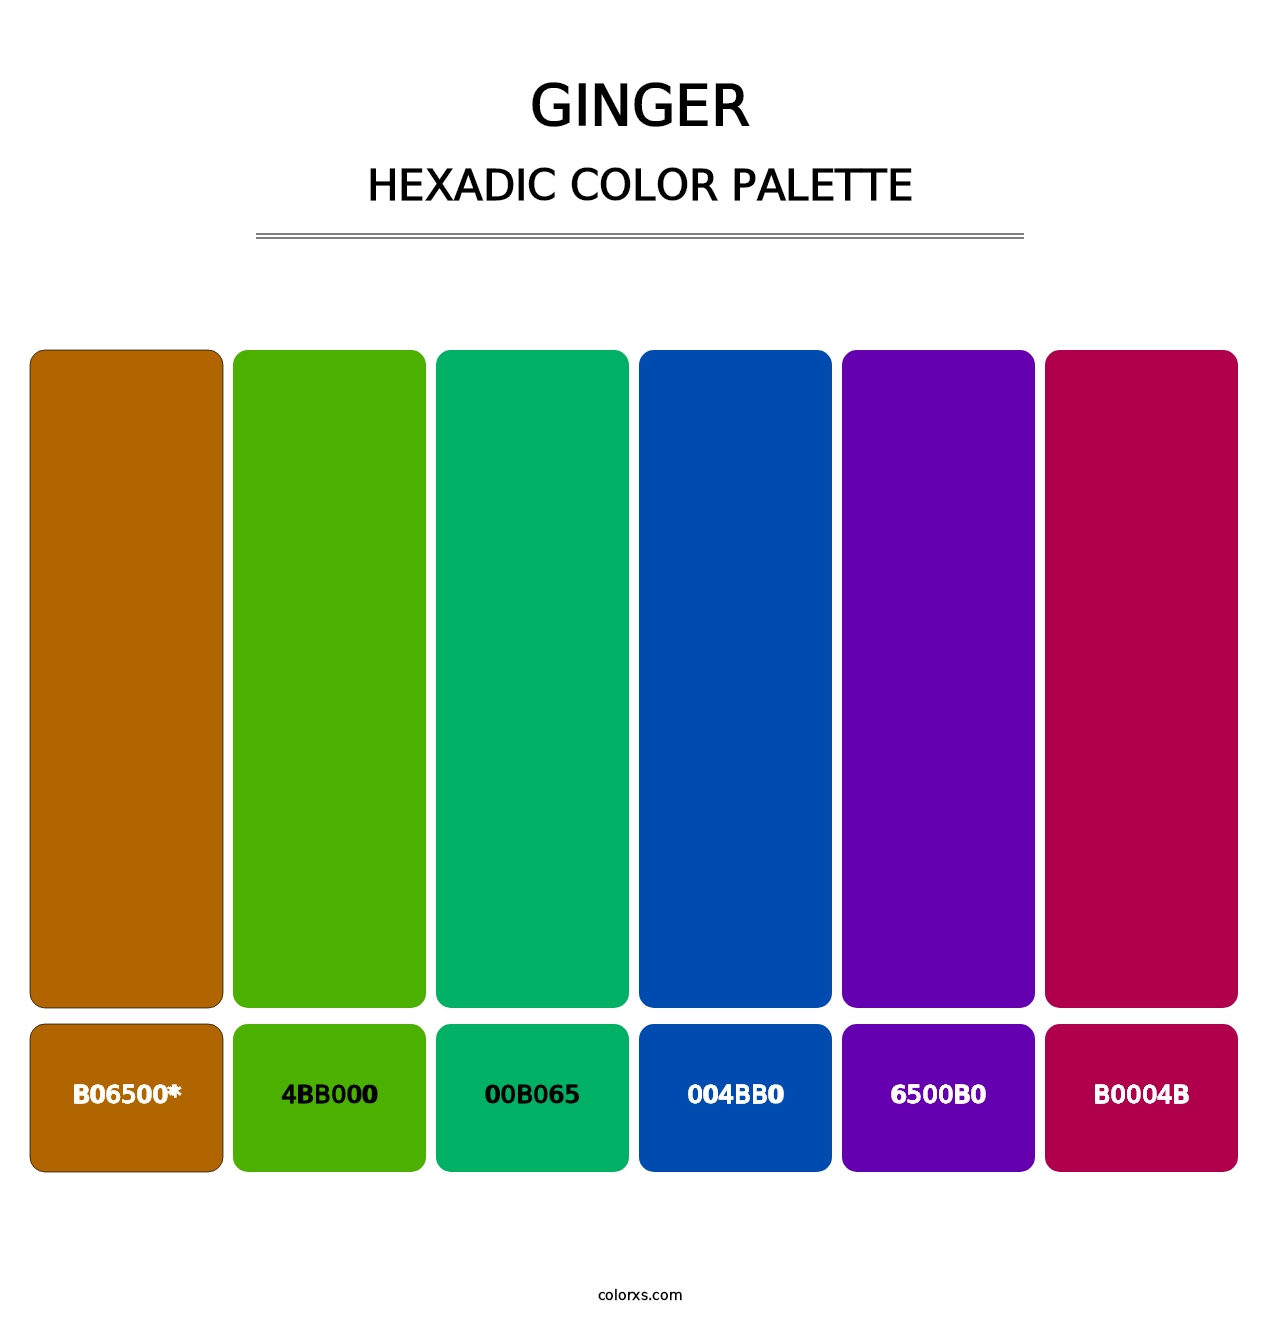 Ginger - Hexadic Color Palette